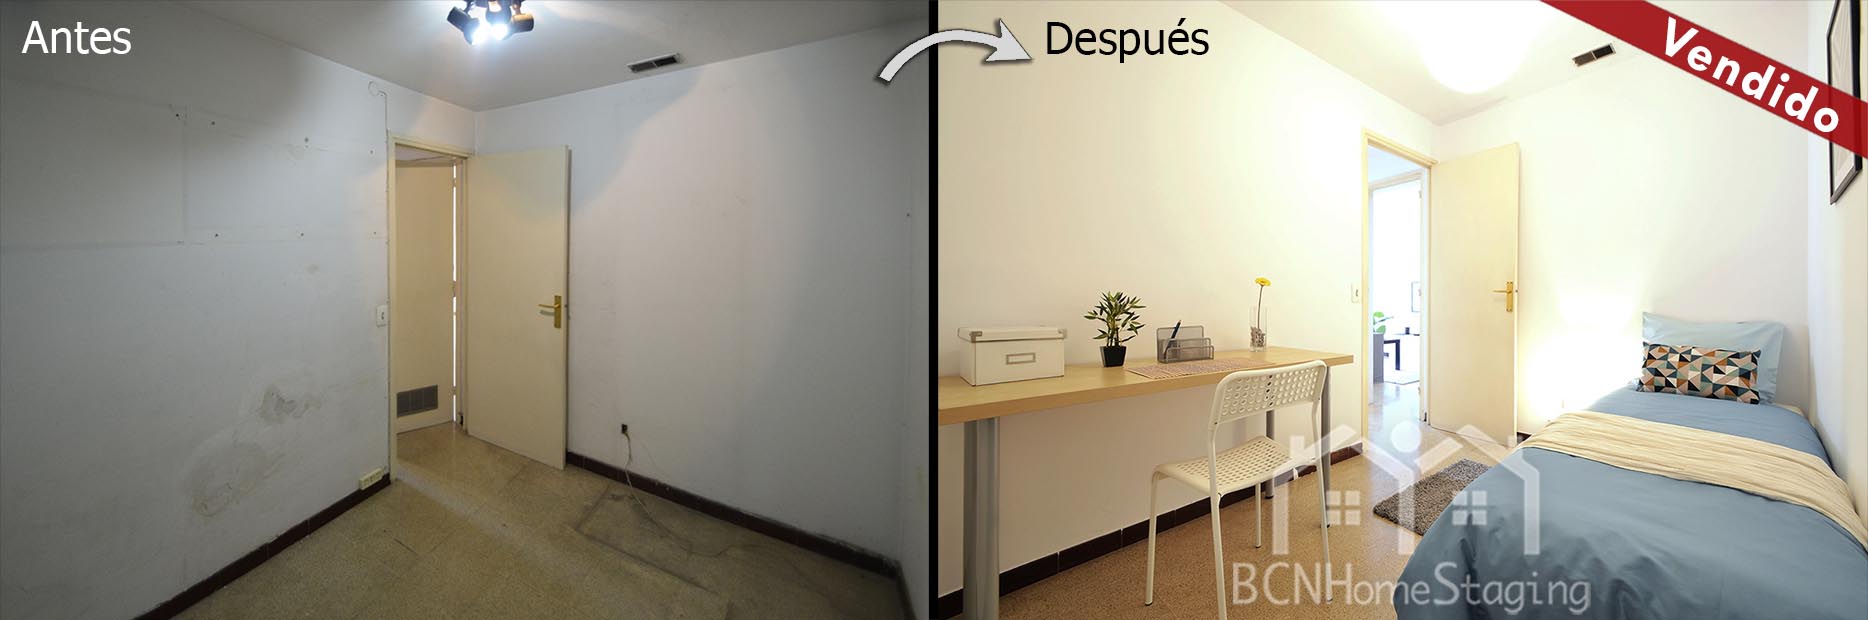 home-staging-barcelona-dormitorio-muebles-cartón